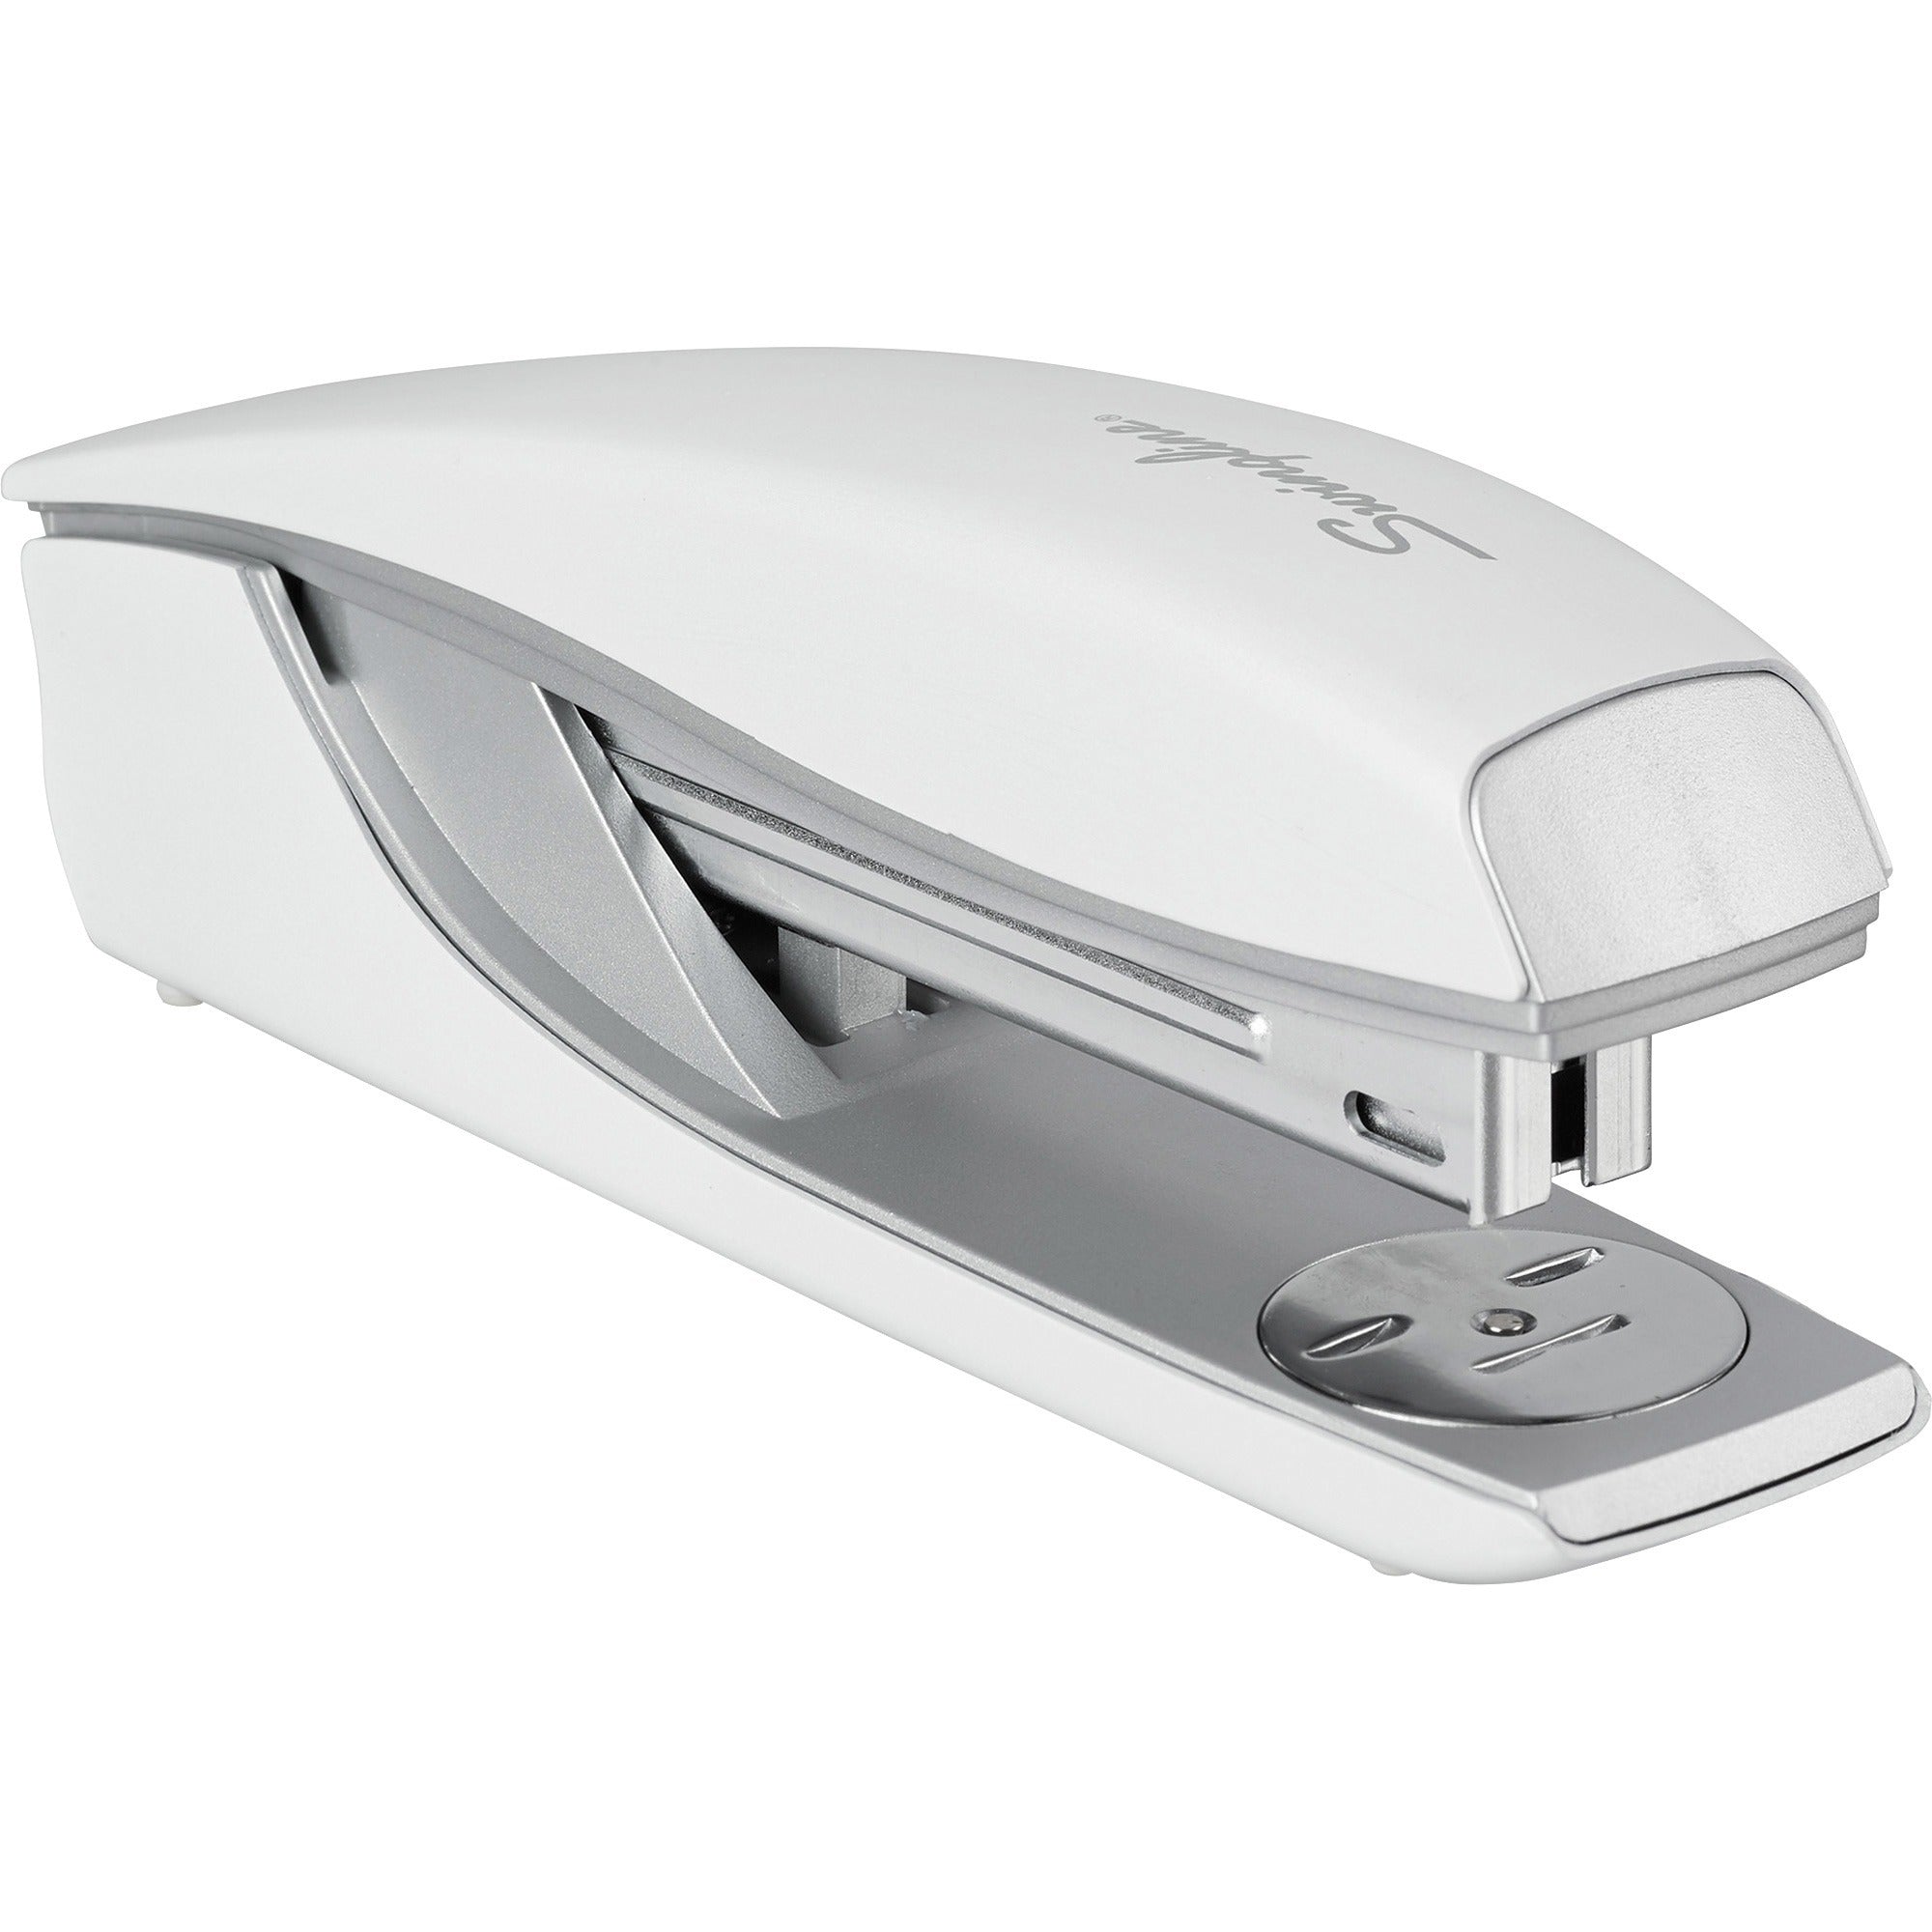 swingline-nexxt-series-style-desktop-stapler-40-sheets-capacity-210-staple-capacity-full-strip-1-each-white_swi55657004 - 1